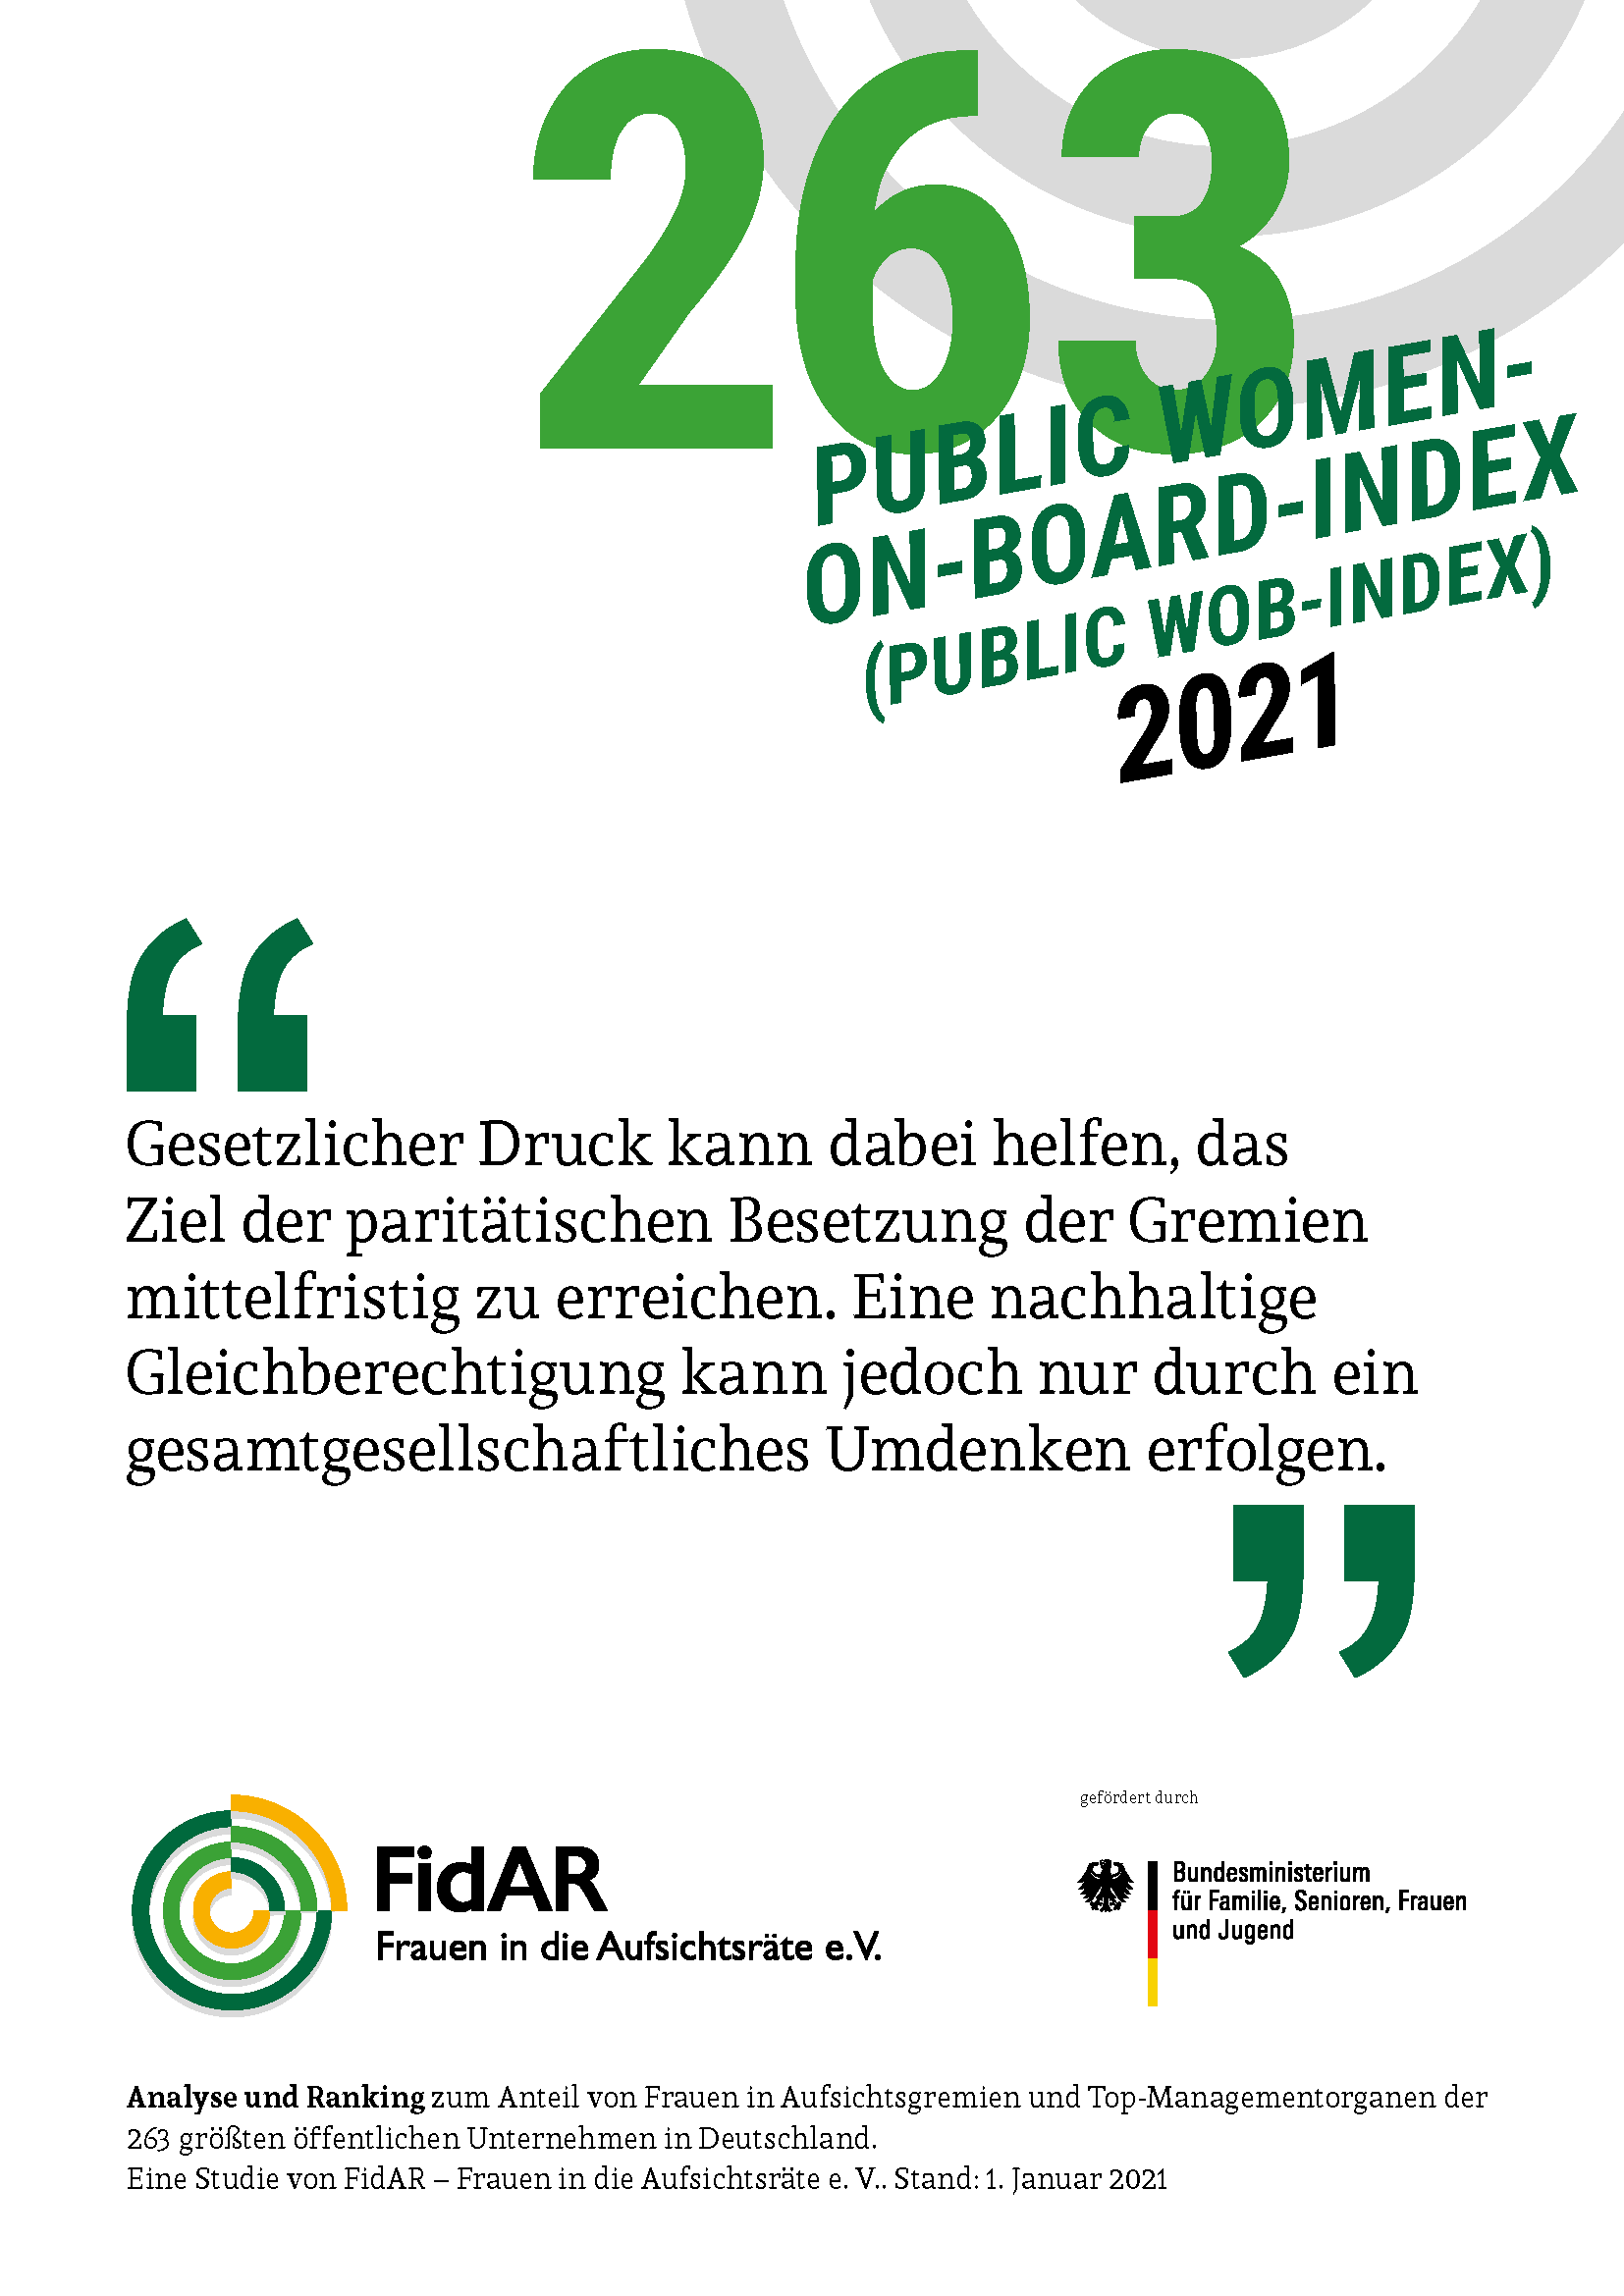 Public WoB-Index 2021